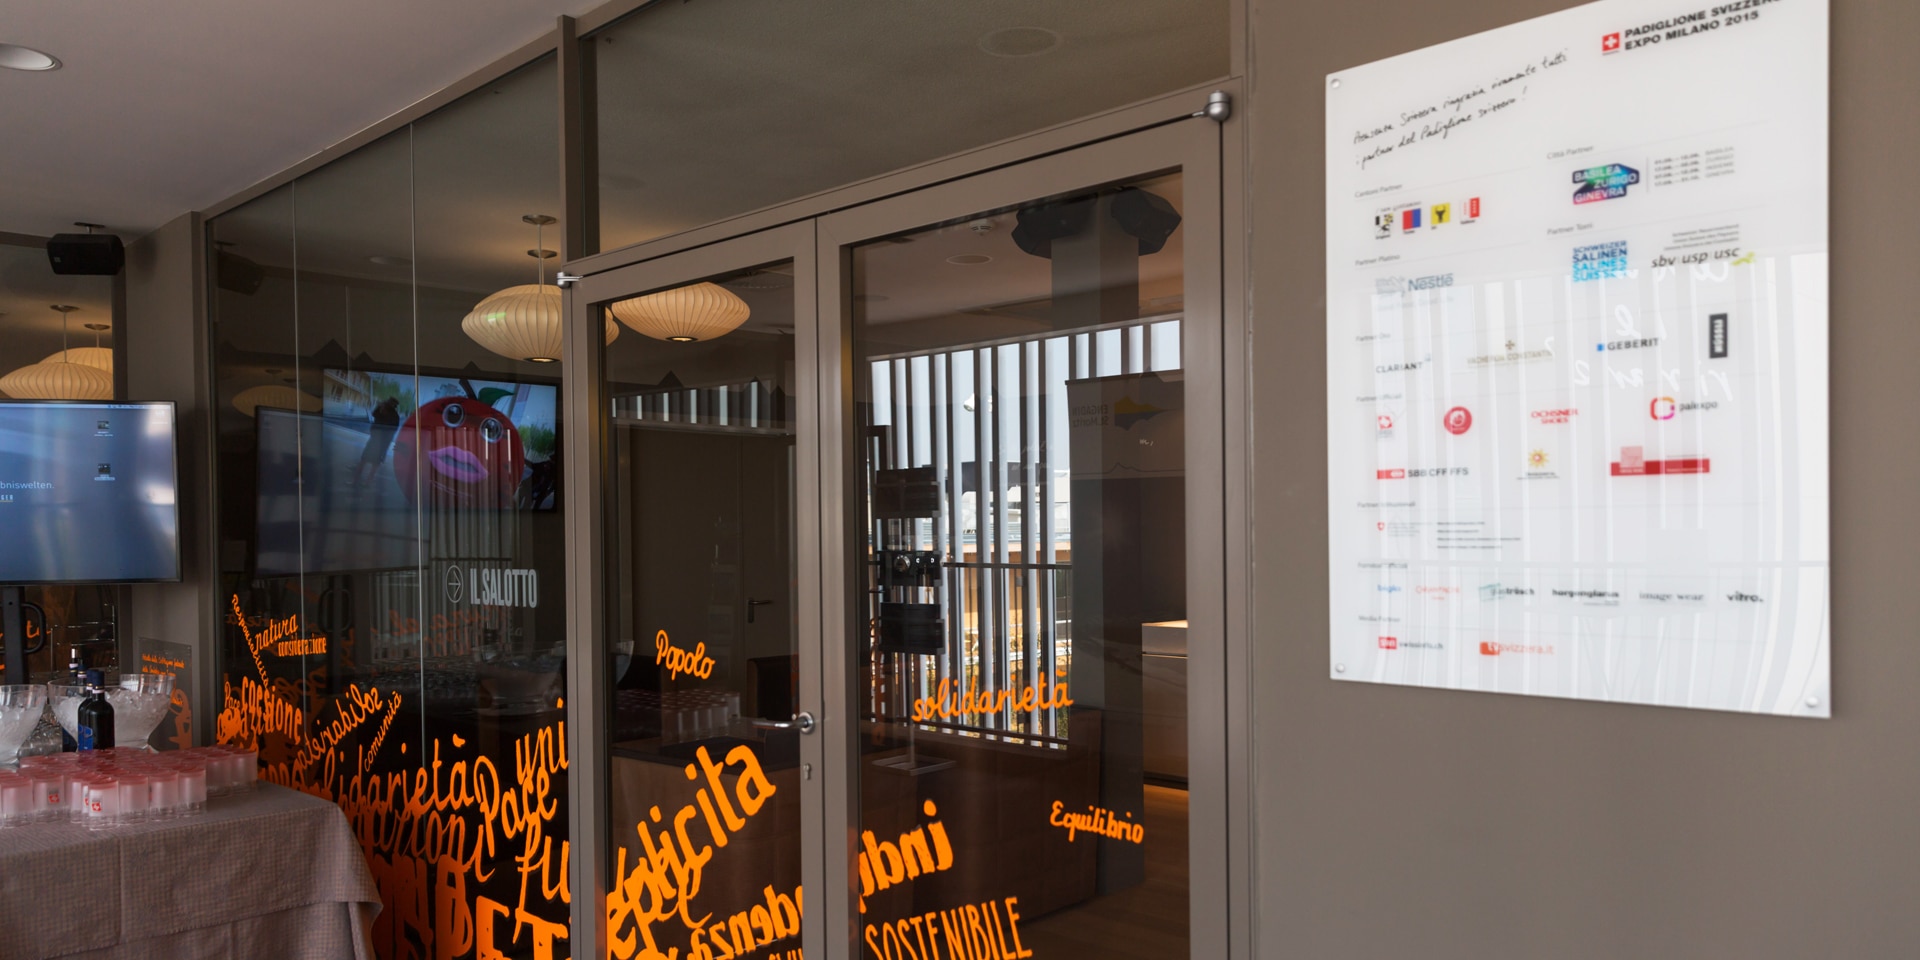 Un panneau blanc située à l’entrée d’un bâtiment détaille l’ensemble des partenaires du pavillon suisse lors de l’Exposition universelle de 2015 à Milan.